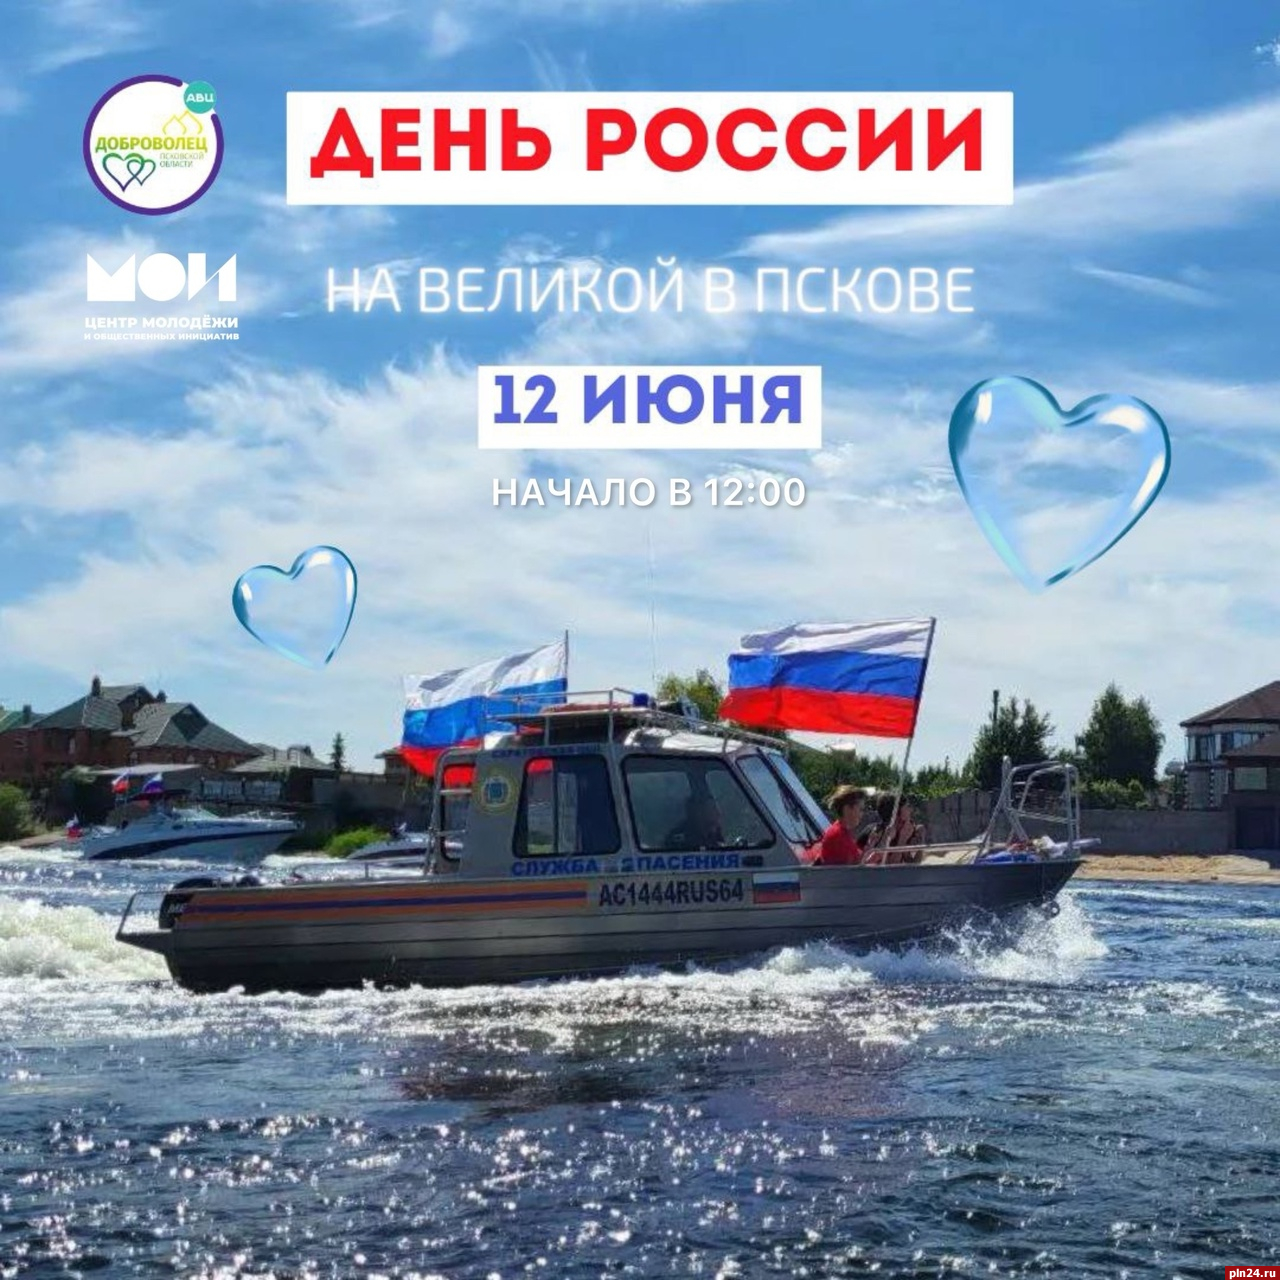 Флешмоб с участием катеров проведут у надписи «Россия начинается здесь» в Пскове 12 июня